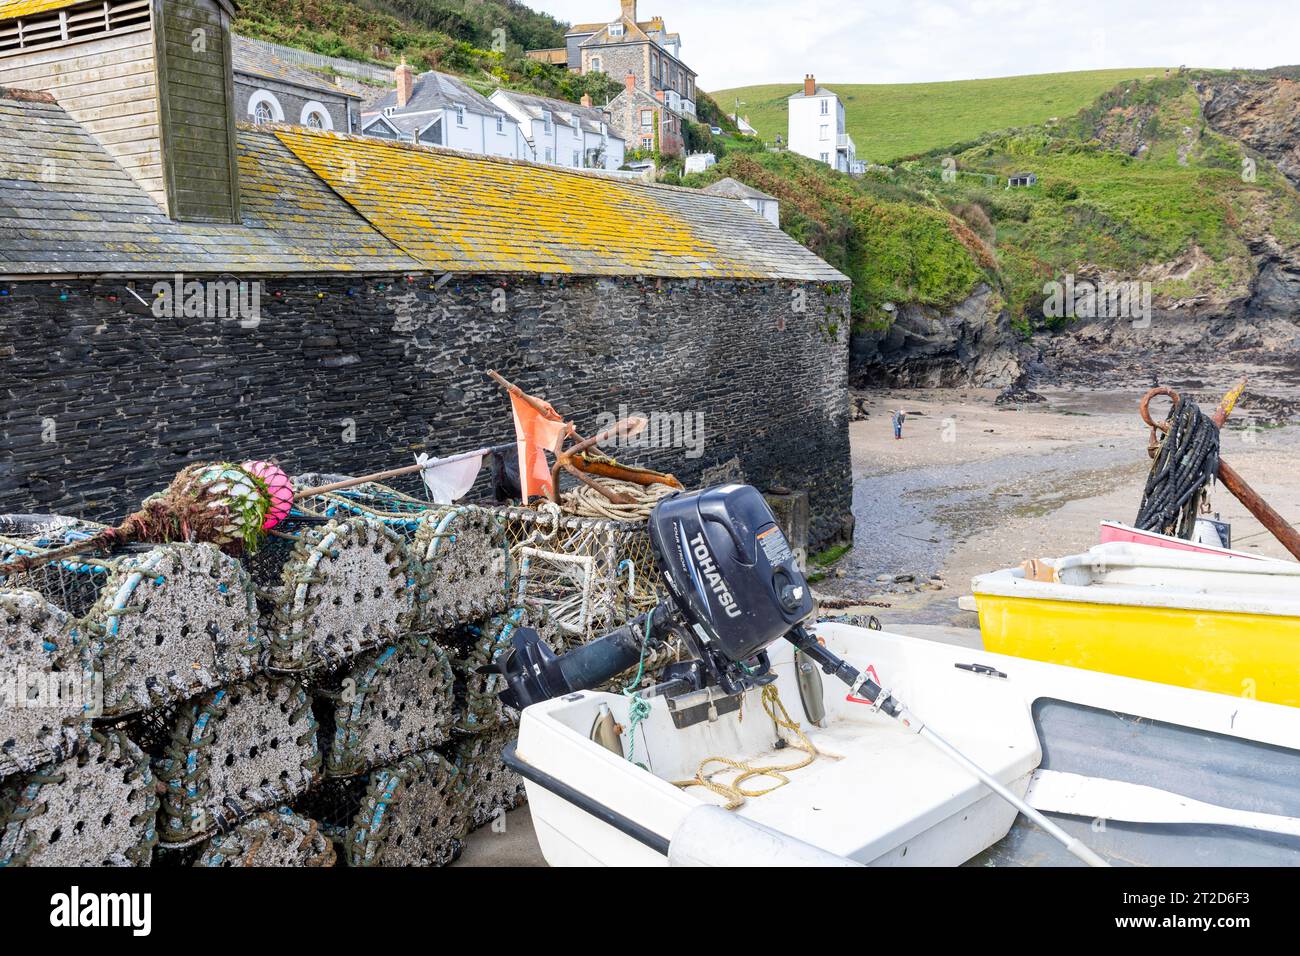 Port Isaac, villaggio di pescatori della Cornovaglia, con vasi di aragosta e granchio, la costa della Cornovaglia è famosa per i turisti, poiché la serie Doc Martin è stata girata qui, Inghilterra, Regno Unito Foto Stock